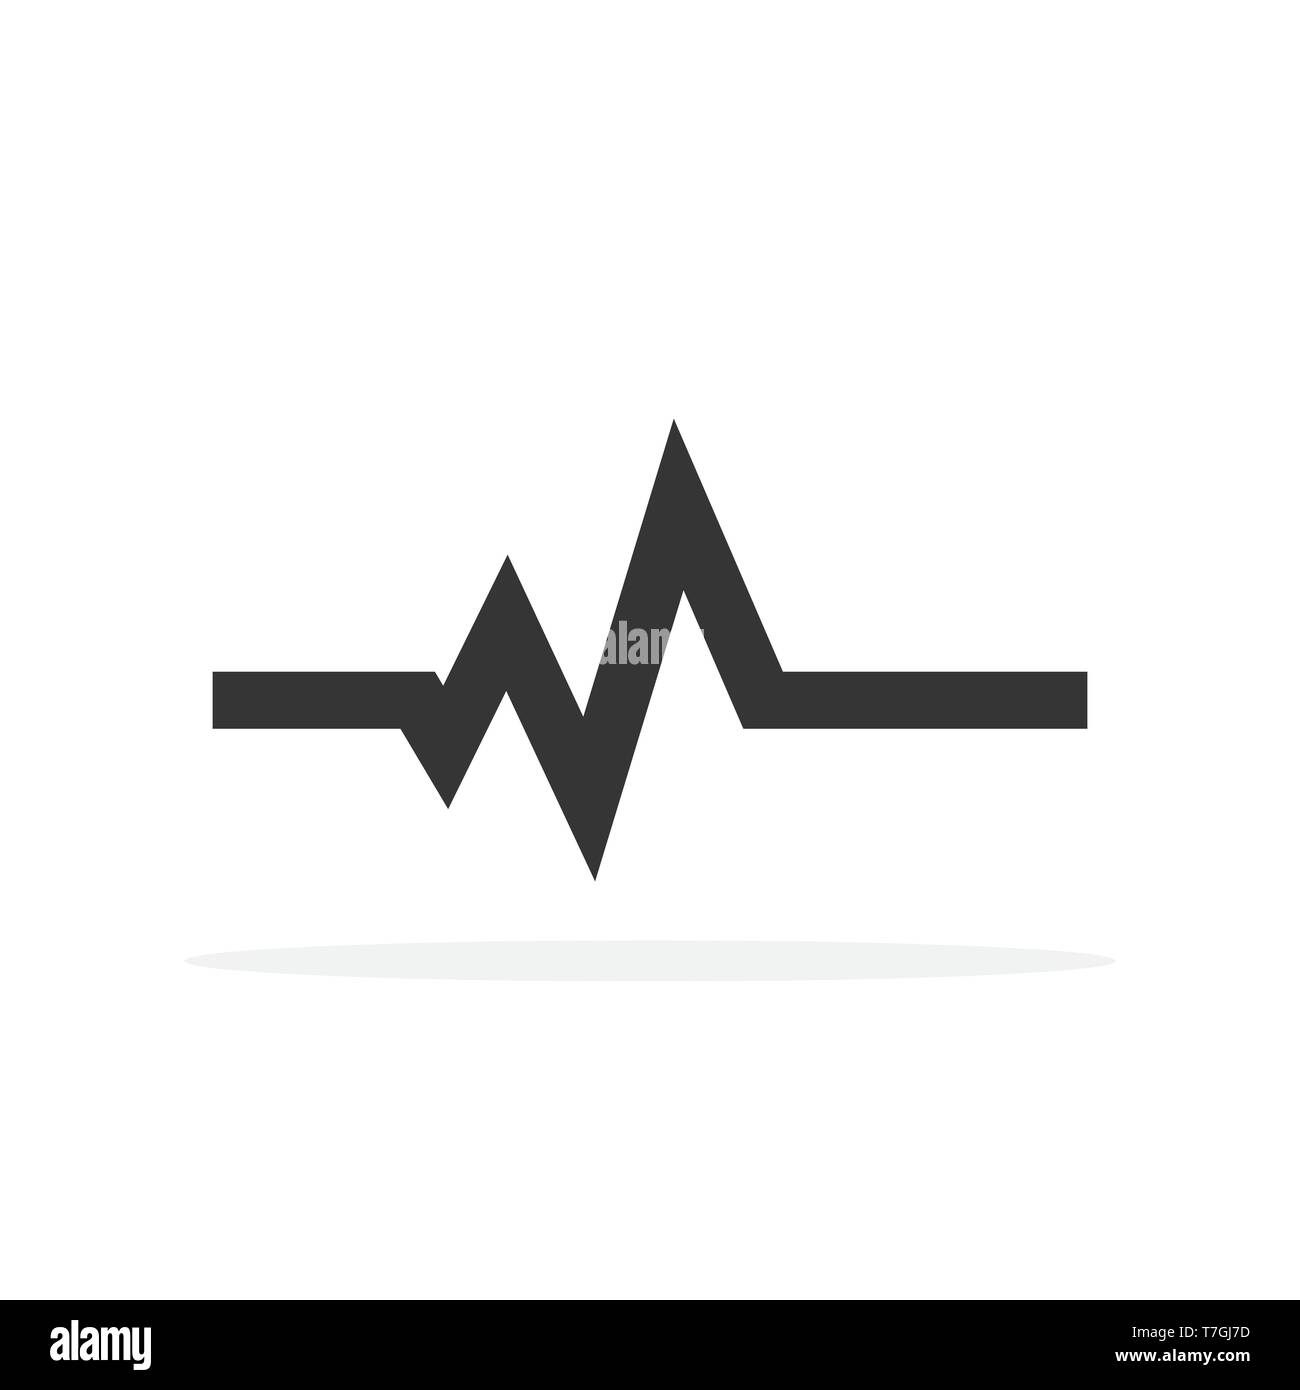 Electrocardiogramme plat Banque d'images noir et blanc - Alamy